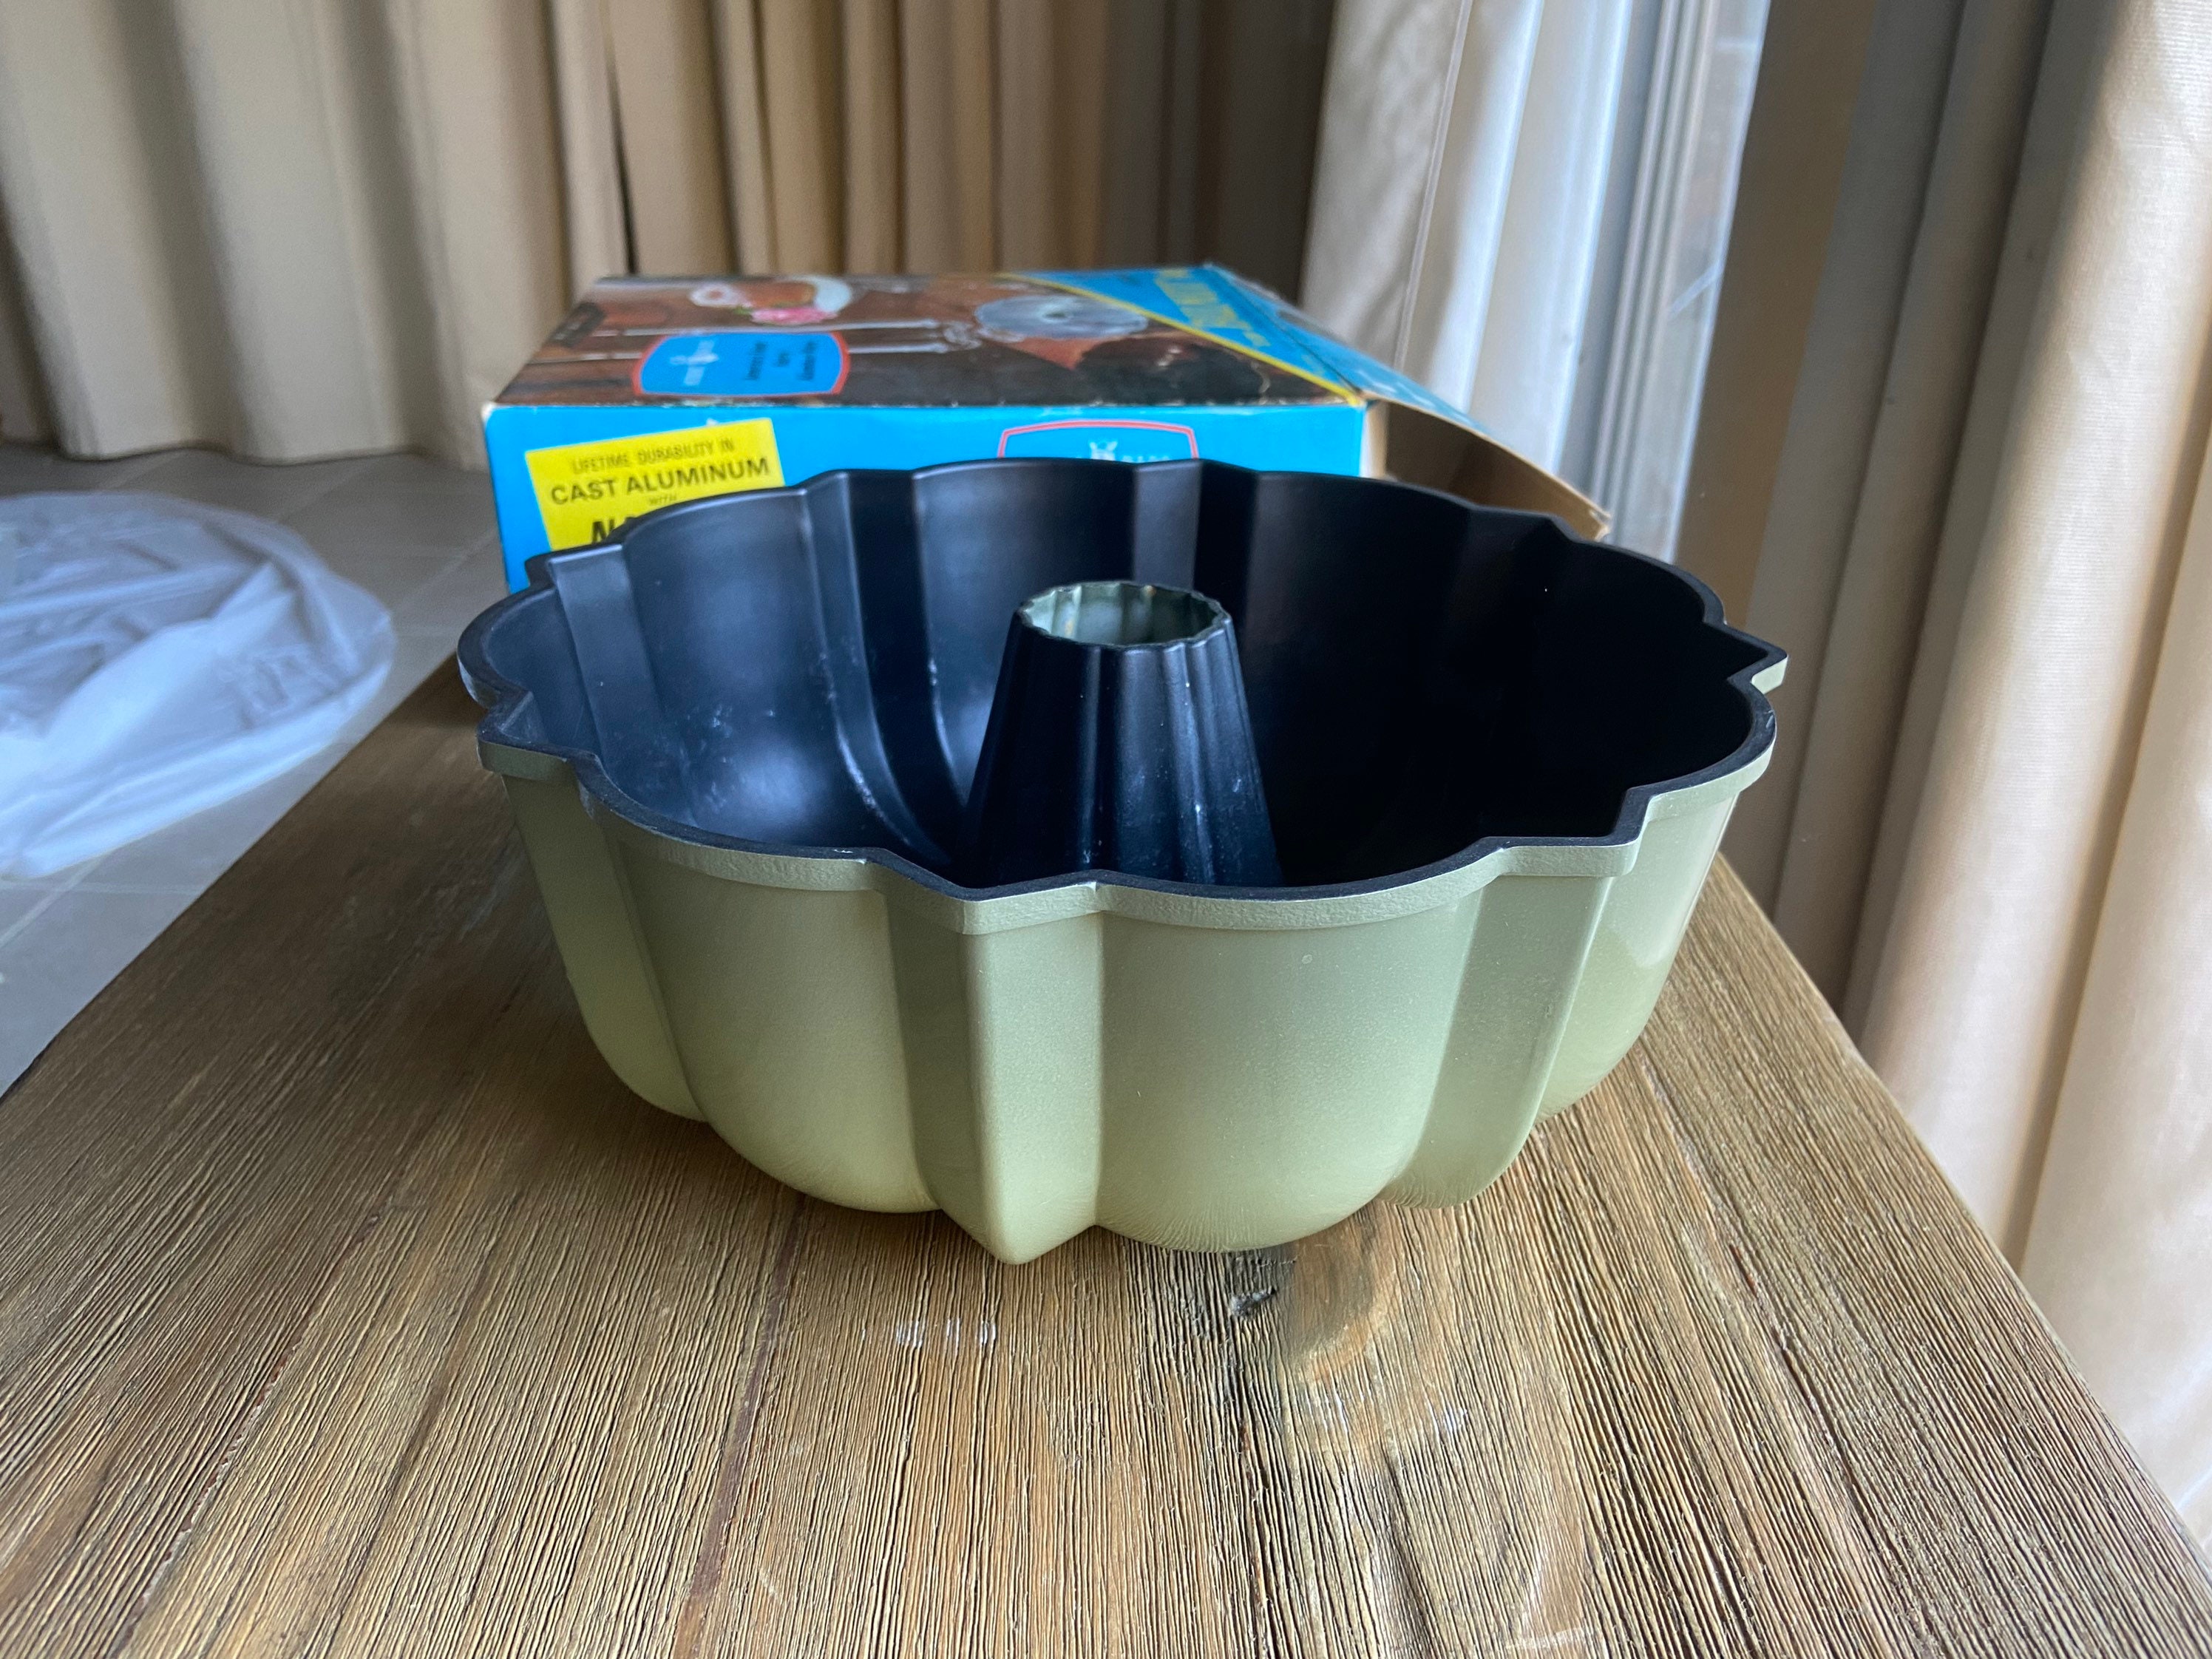 Vintage Nordicware Avocado Green 12 Cup Bundt Pan in Original Box 